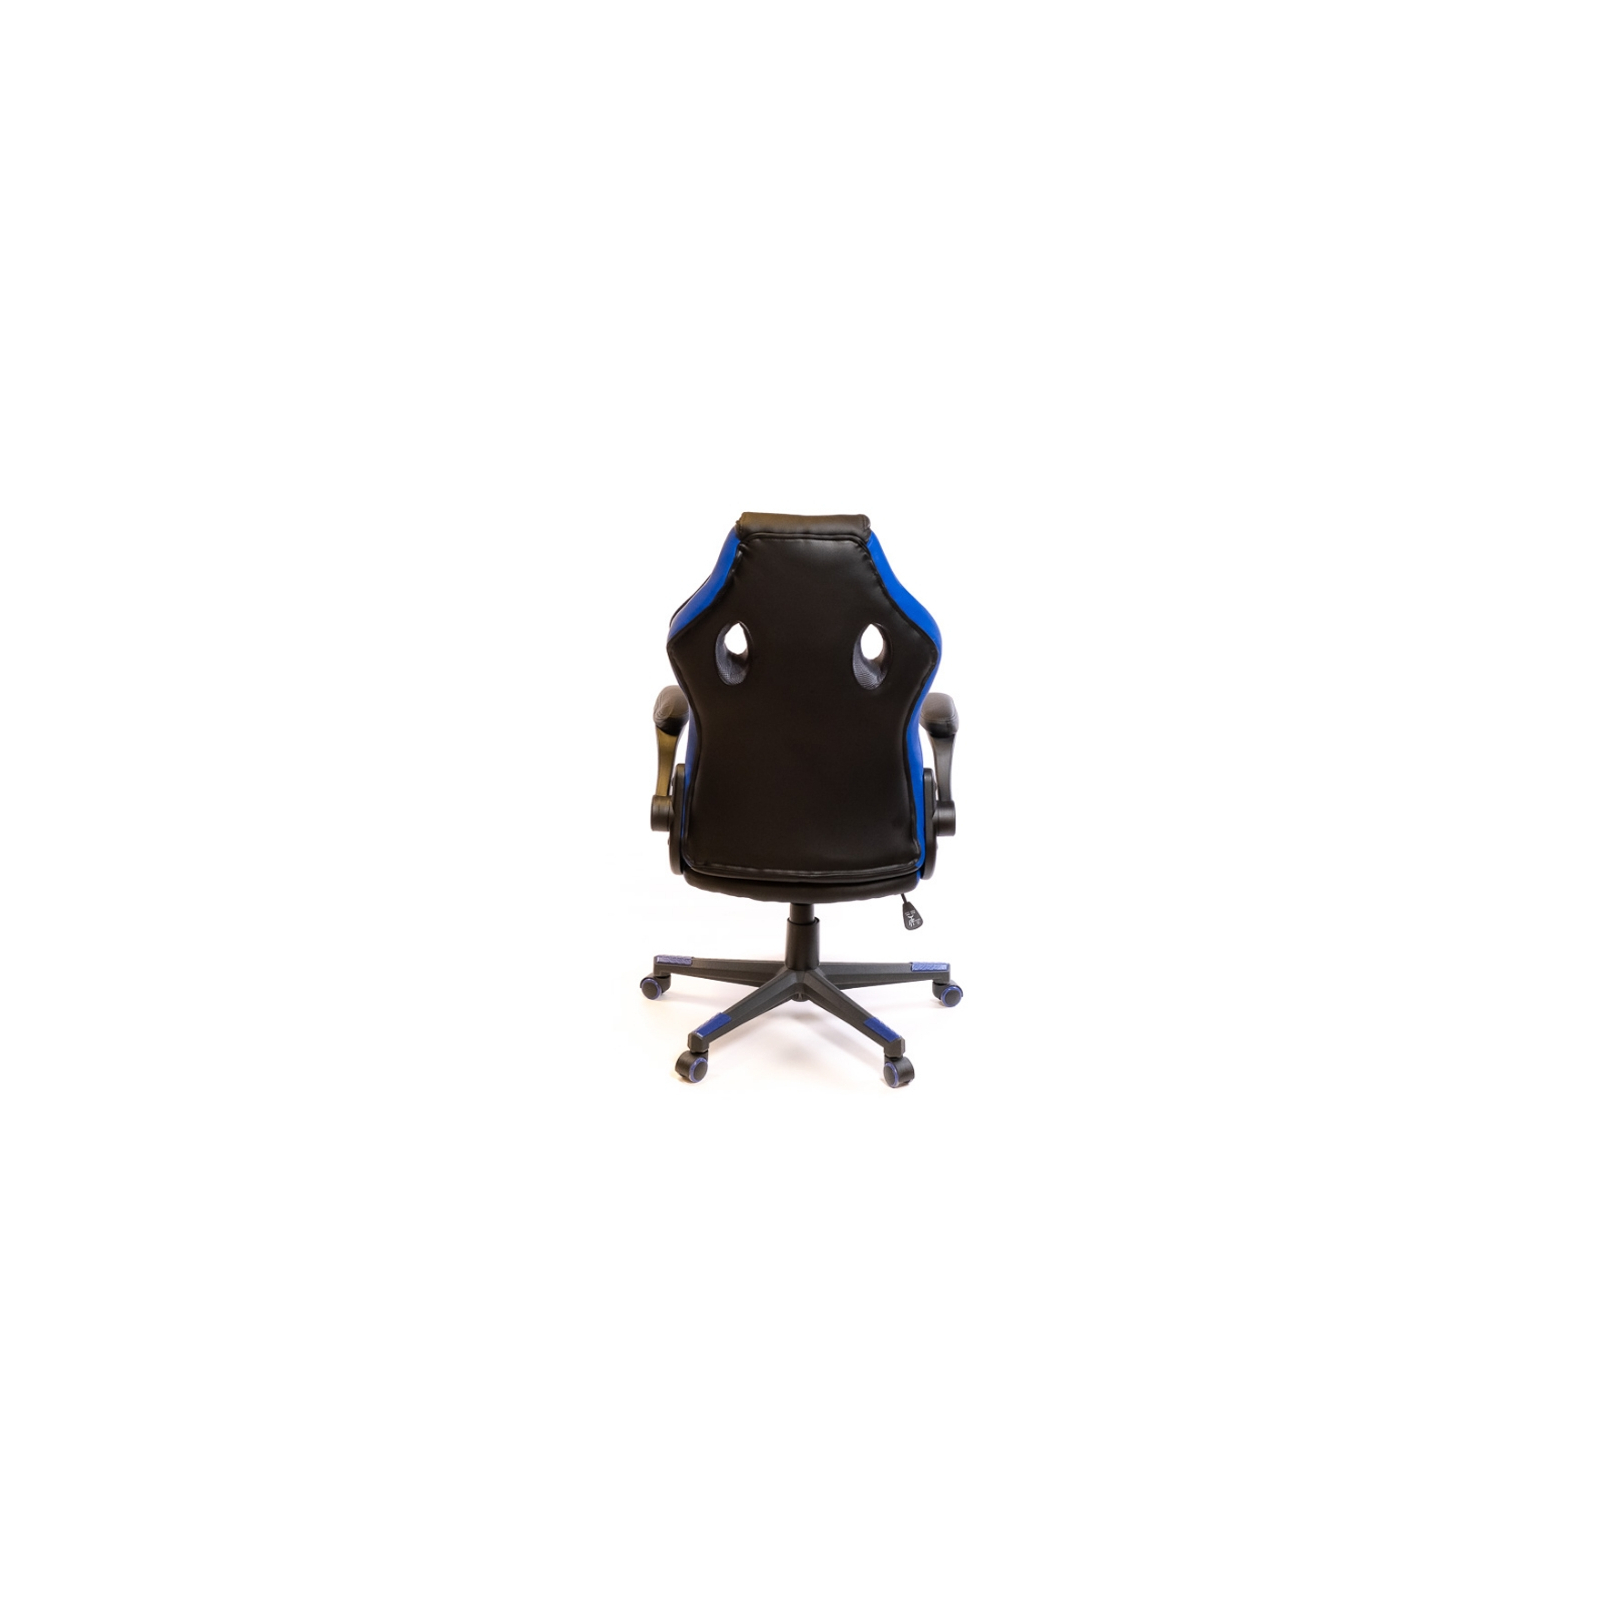 Кресло игровое Аклас Страйкер PL TILT Синее (18448) изображение 4